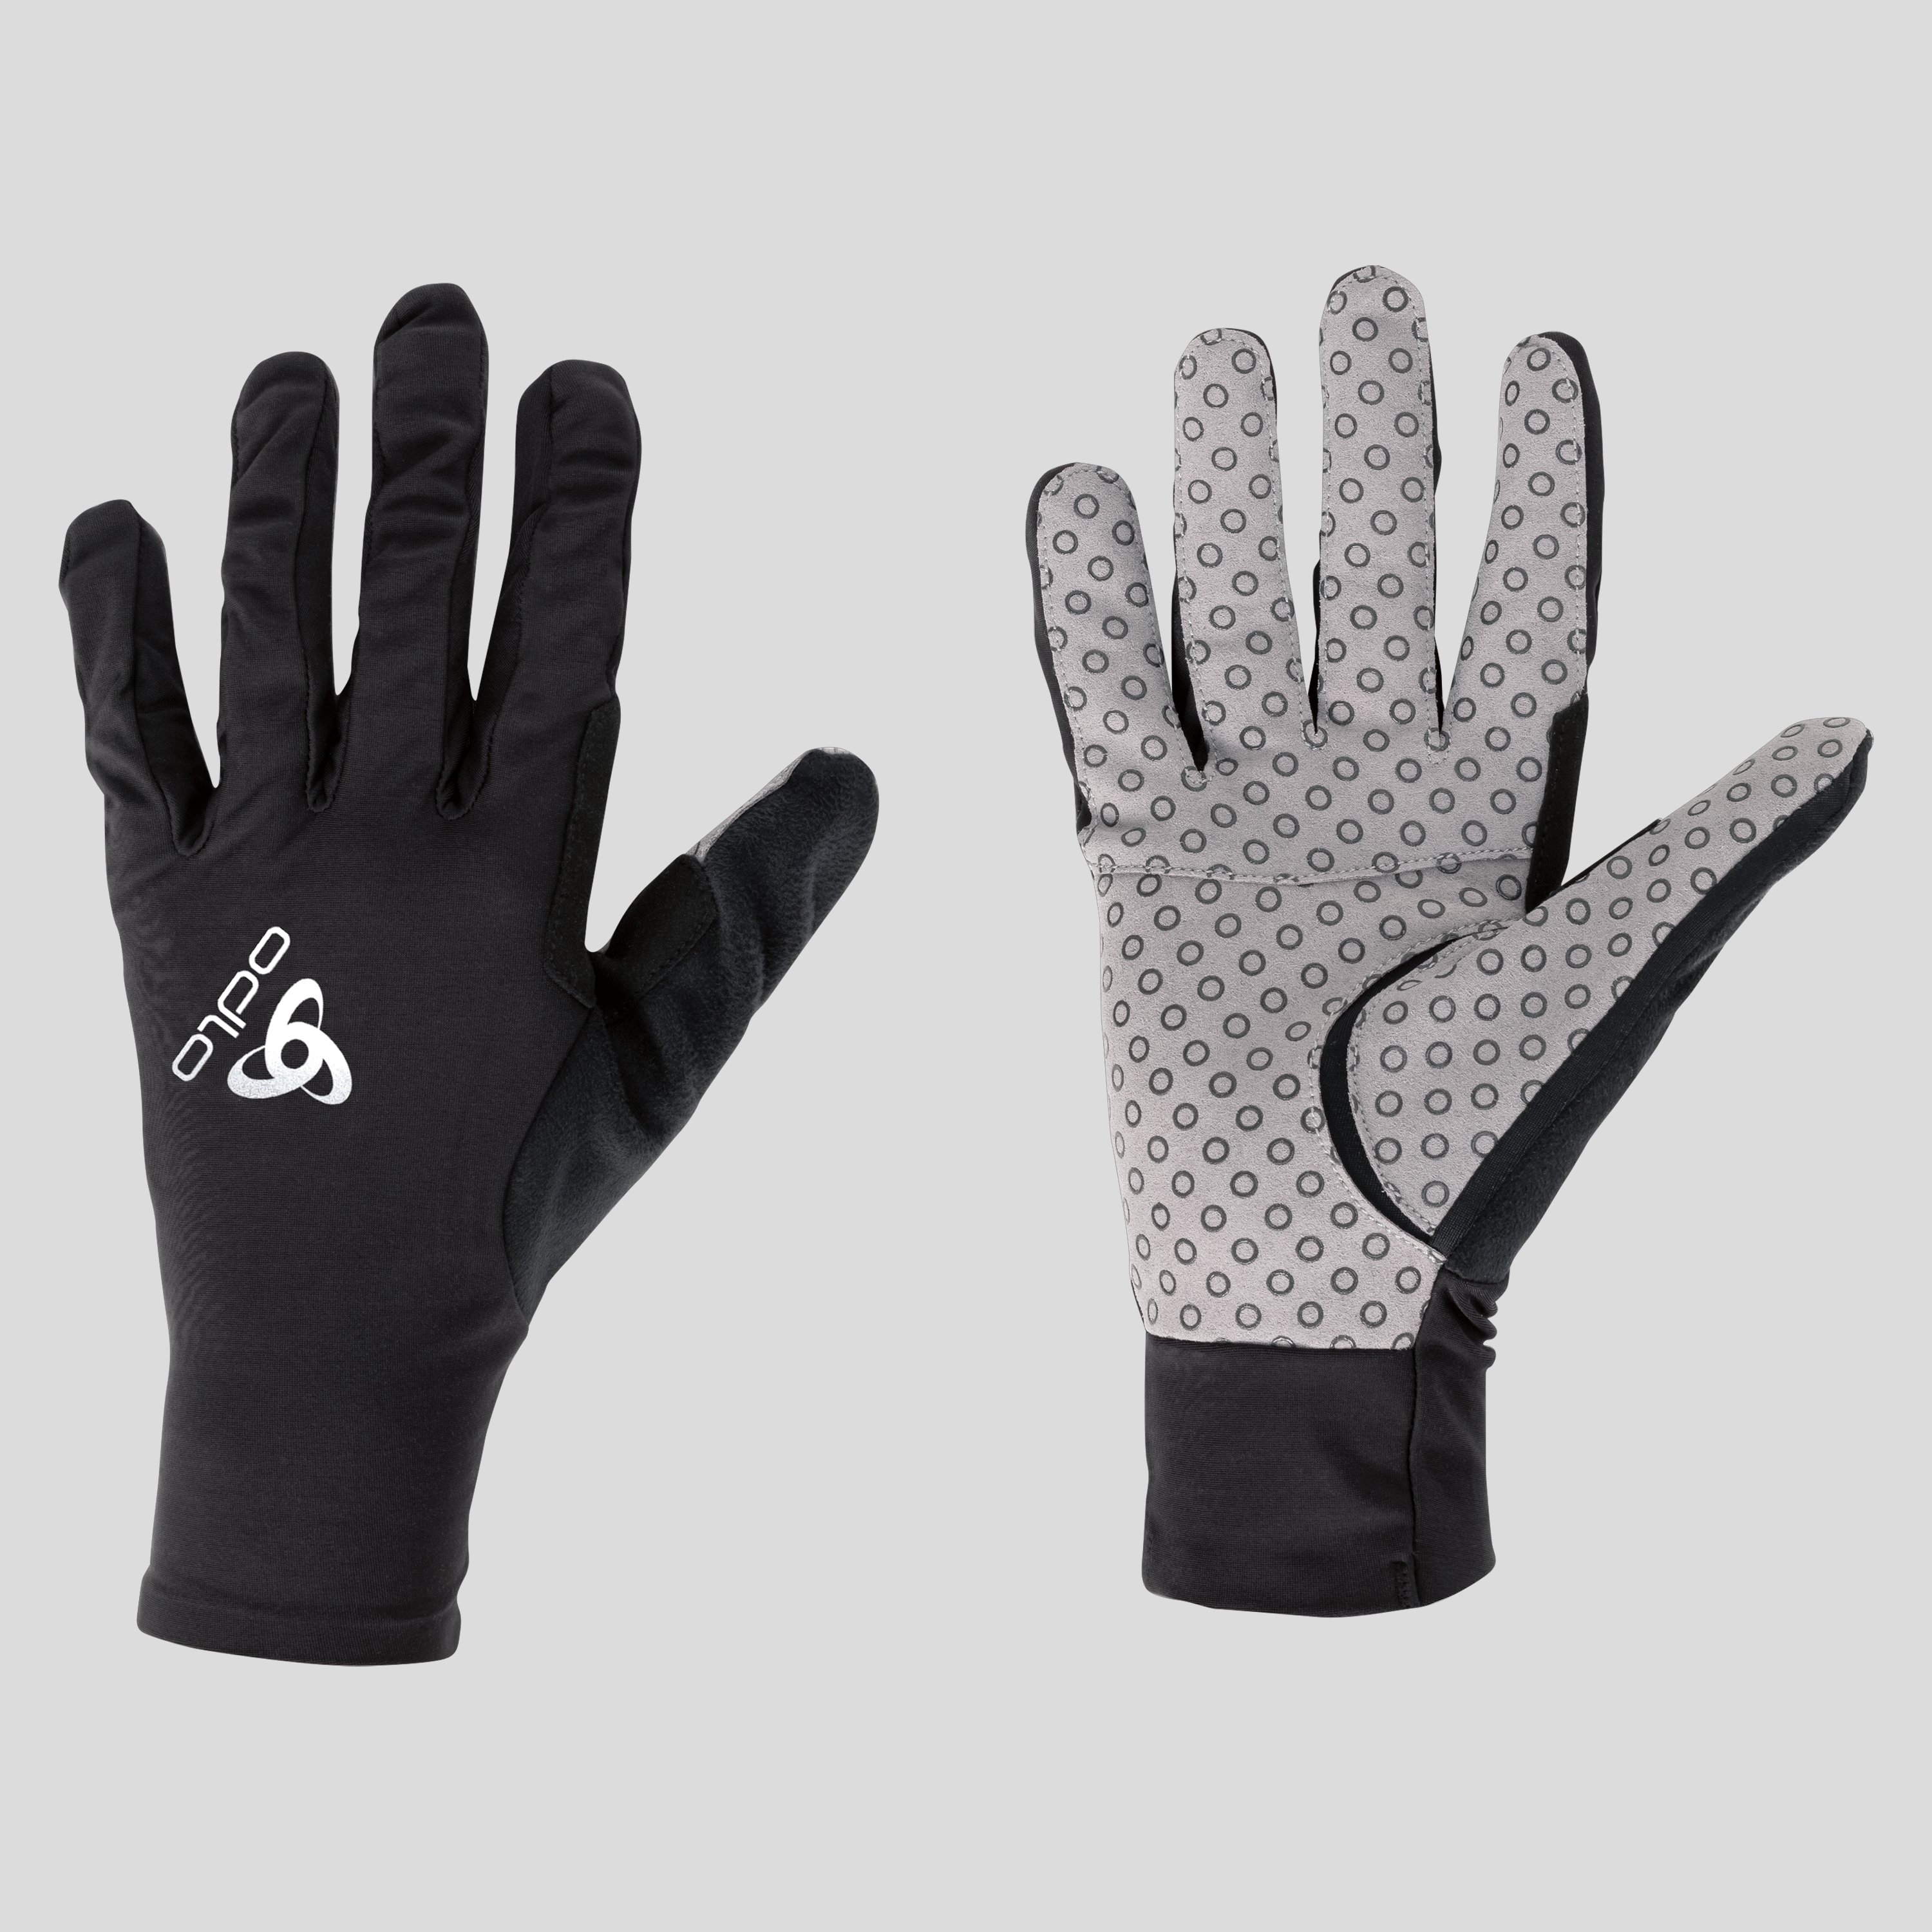 ODLO Zeroweight X-Light Handschuhe, L, schwarz